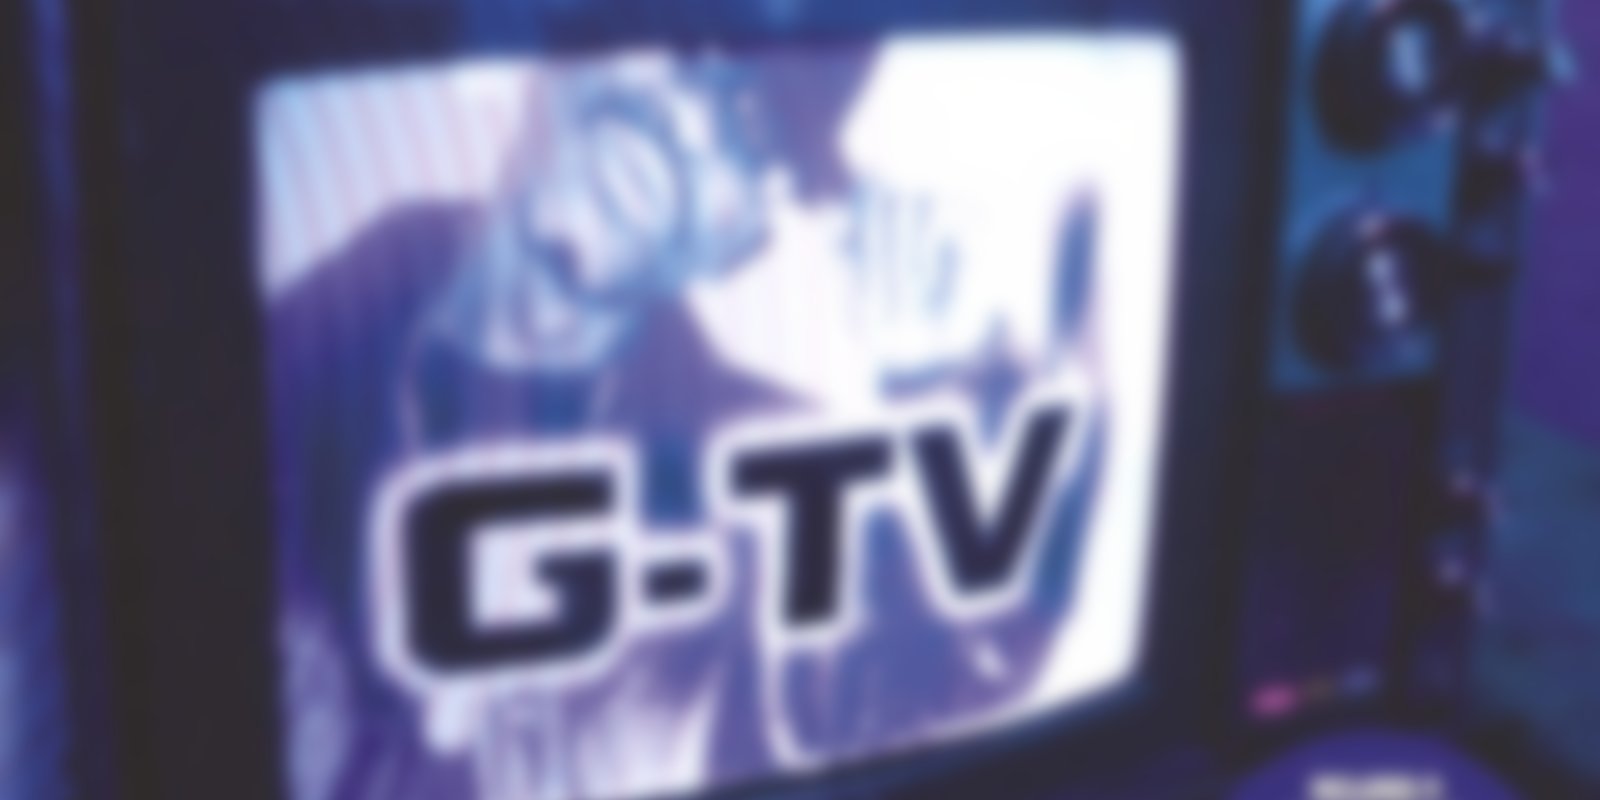 Kurupt - G-TV